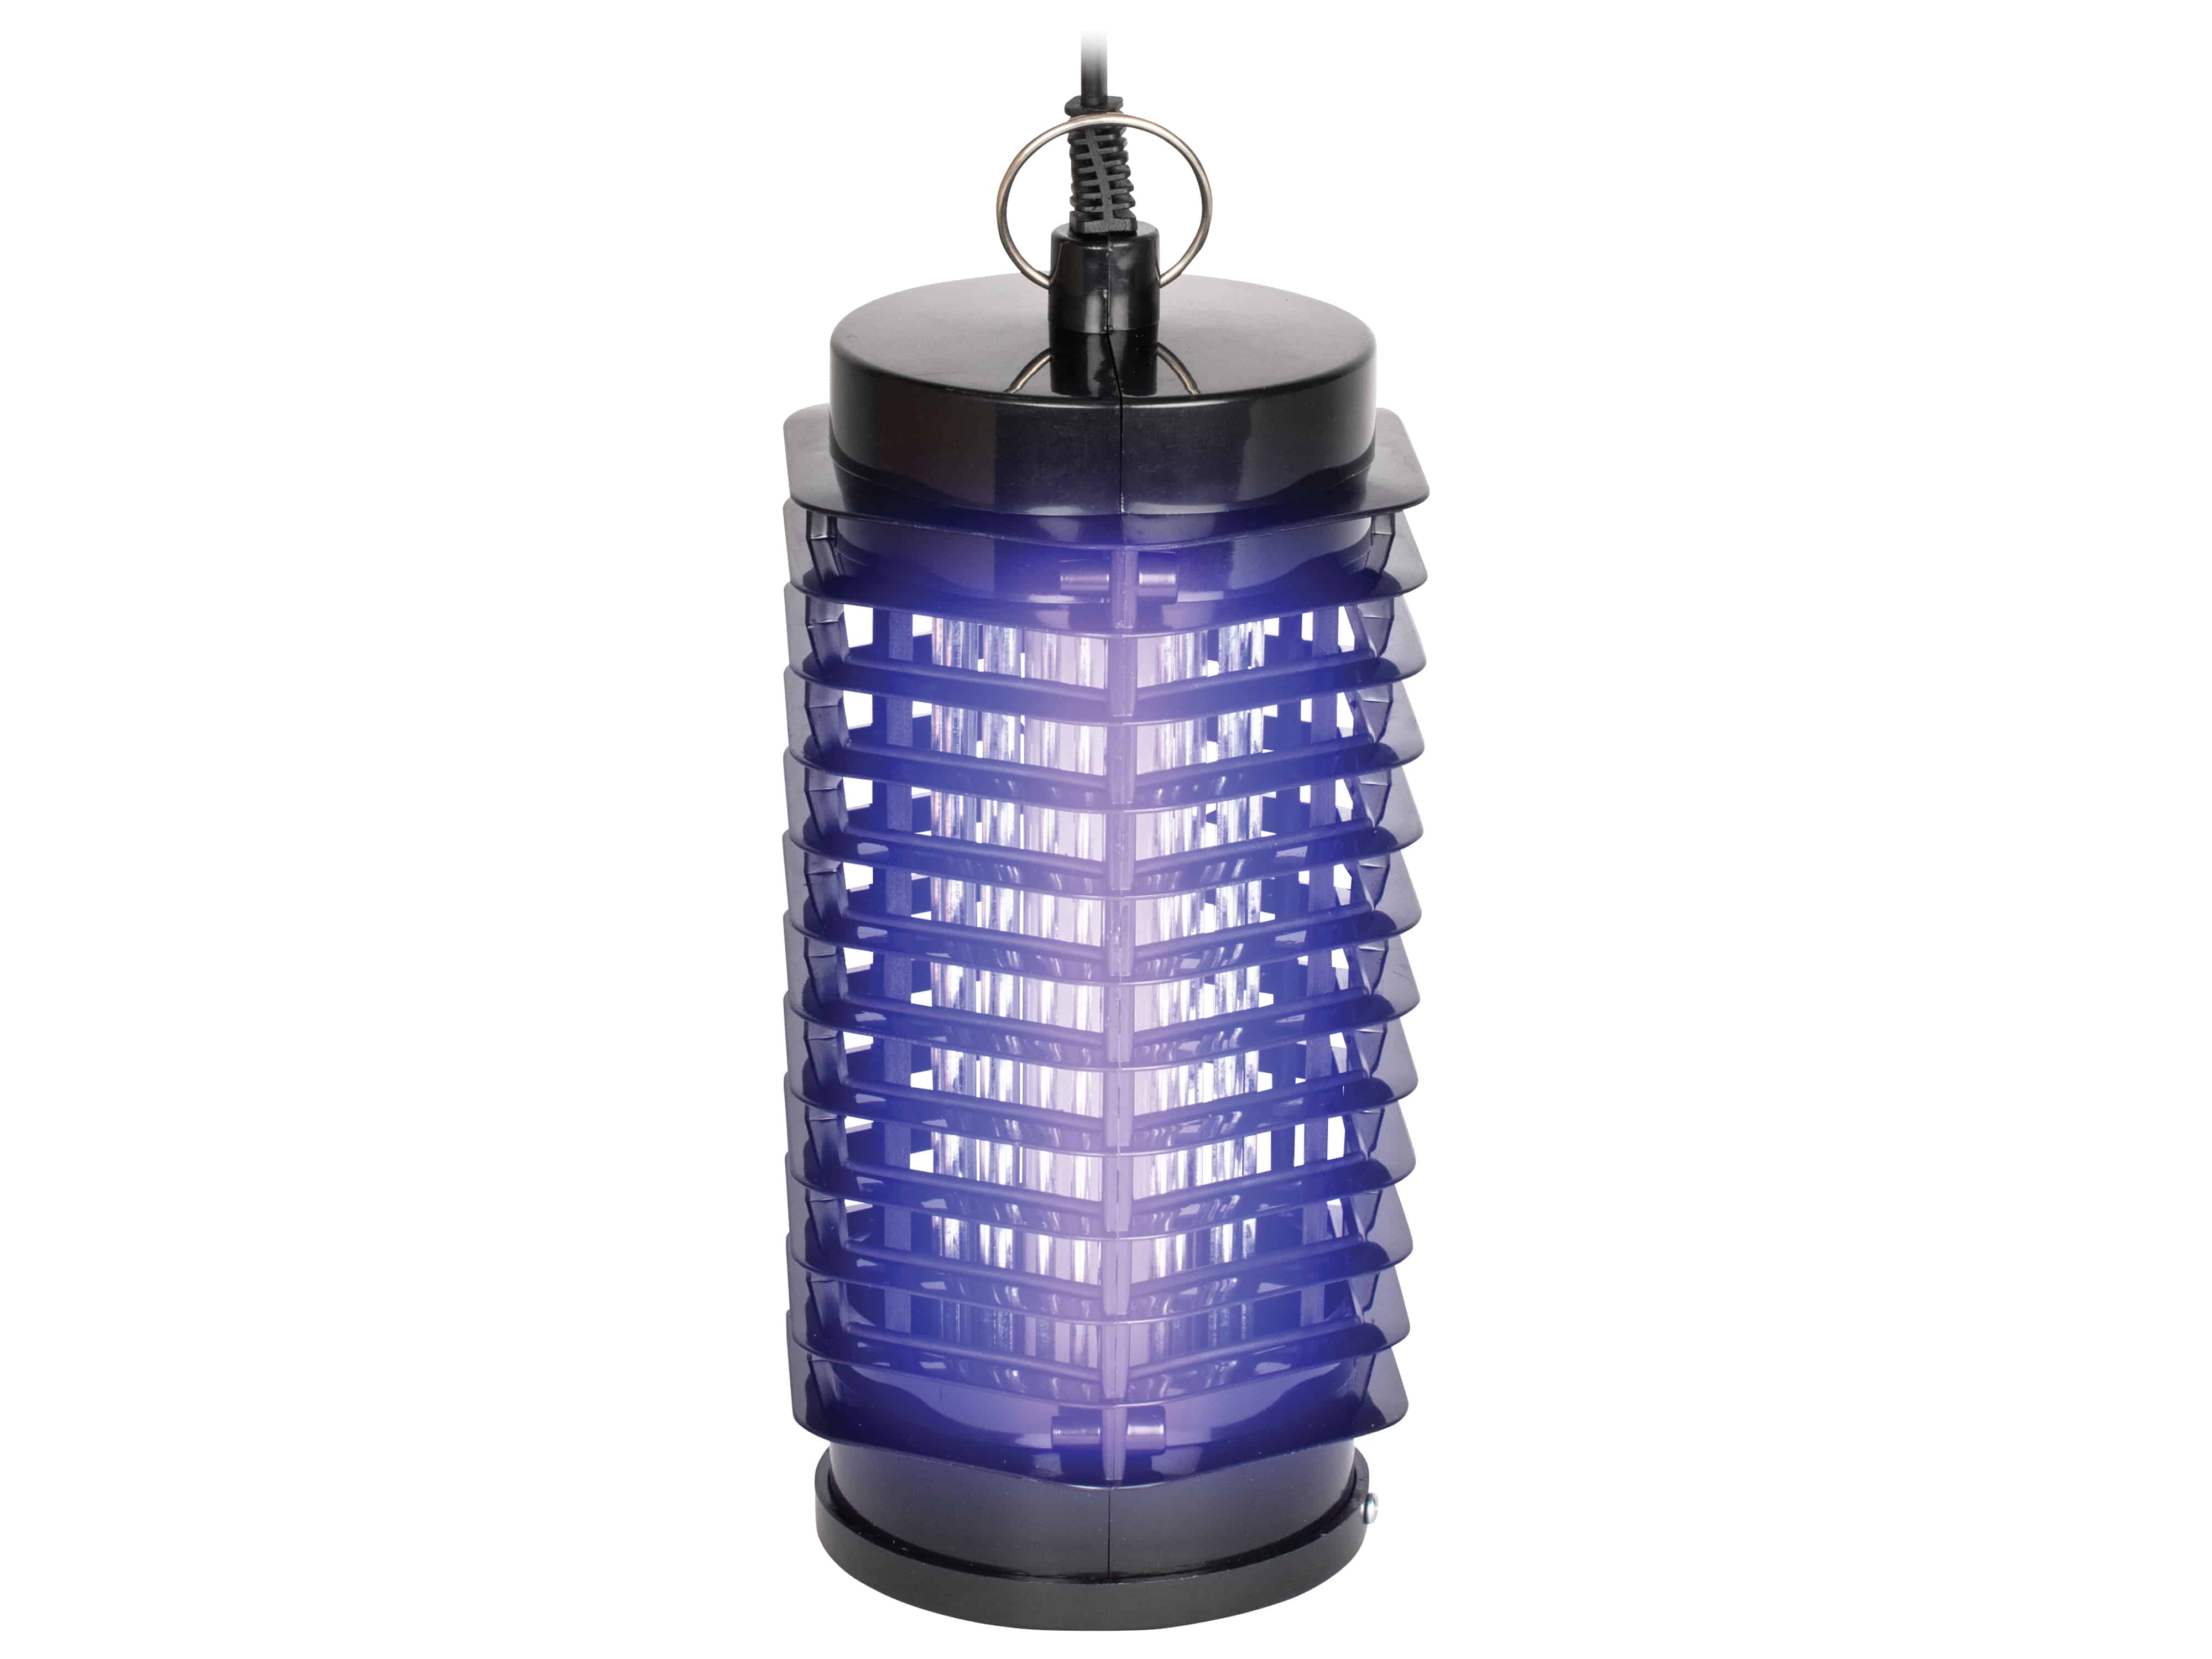 GARDIGO UV-LED Insekten-Vernichter 62331, 25 qm Innenraum